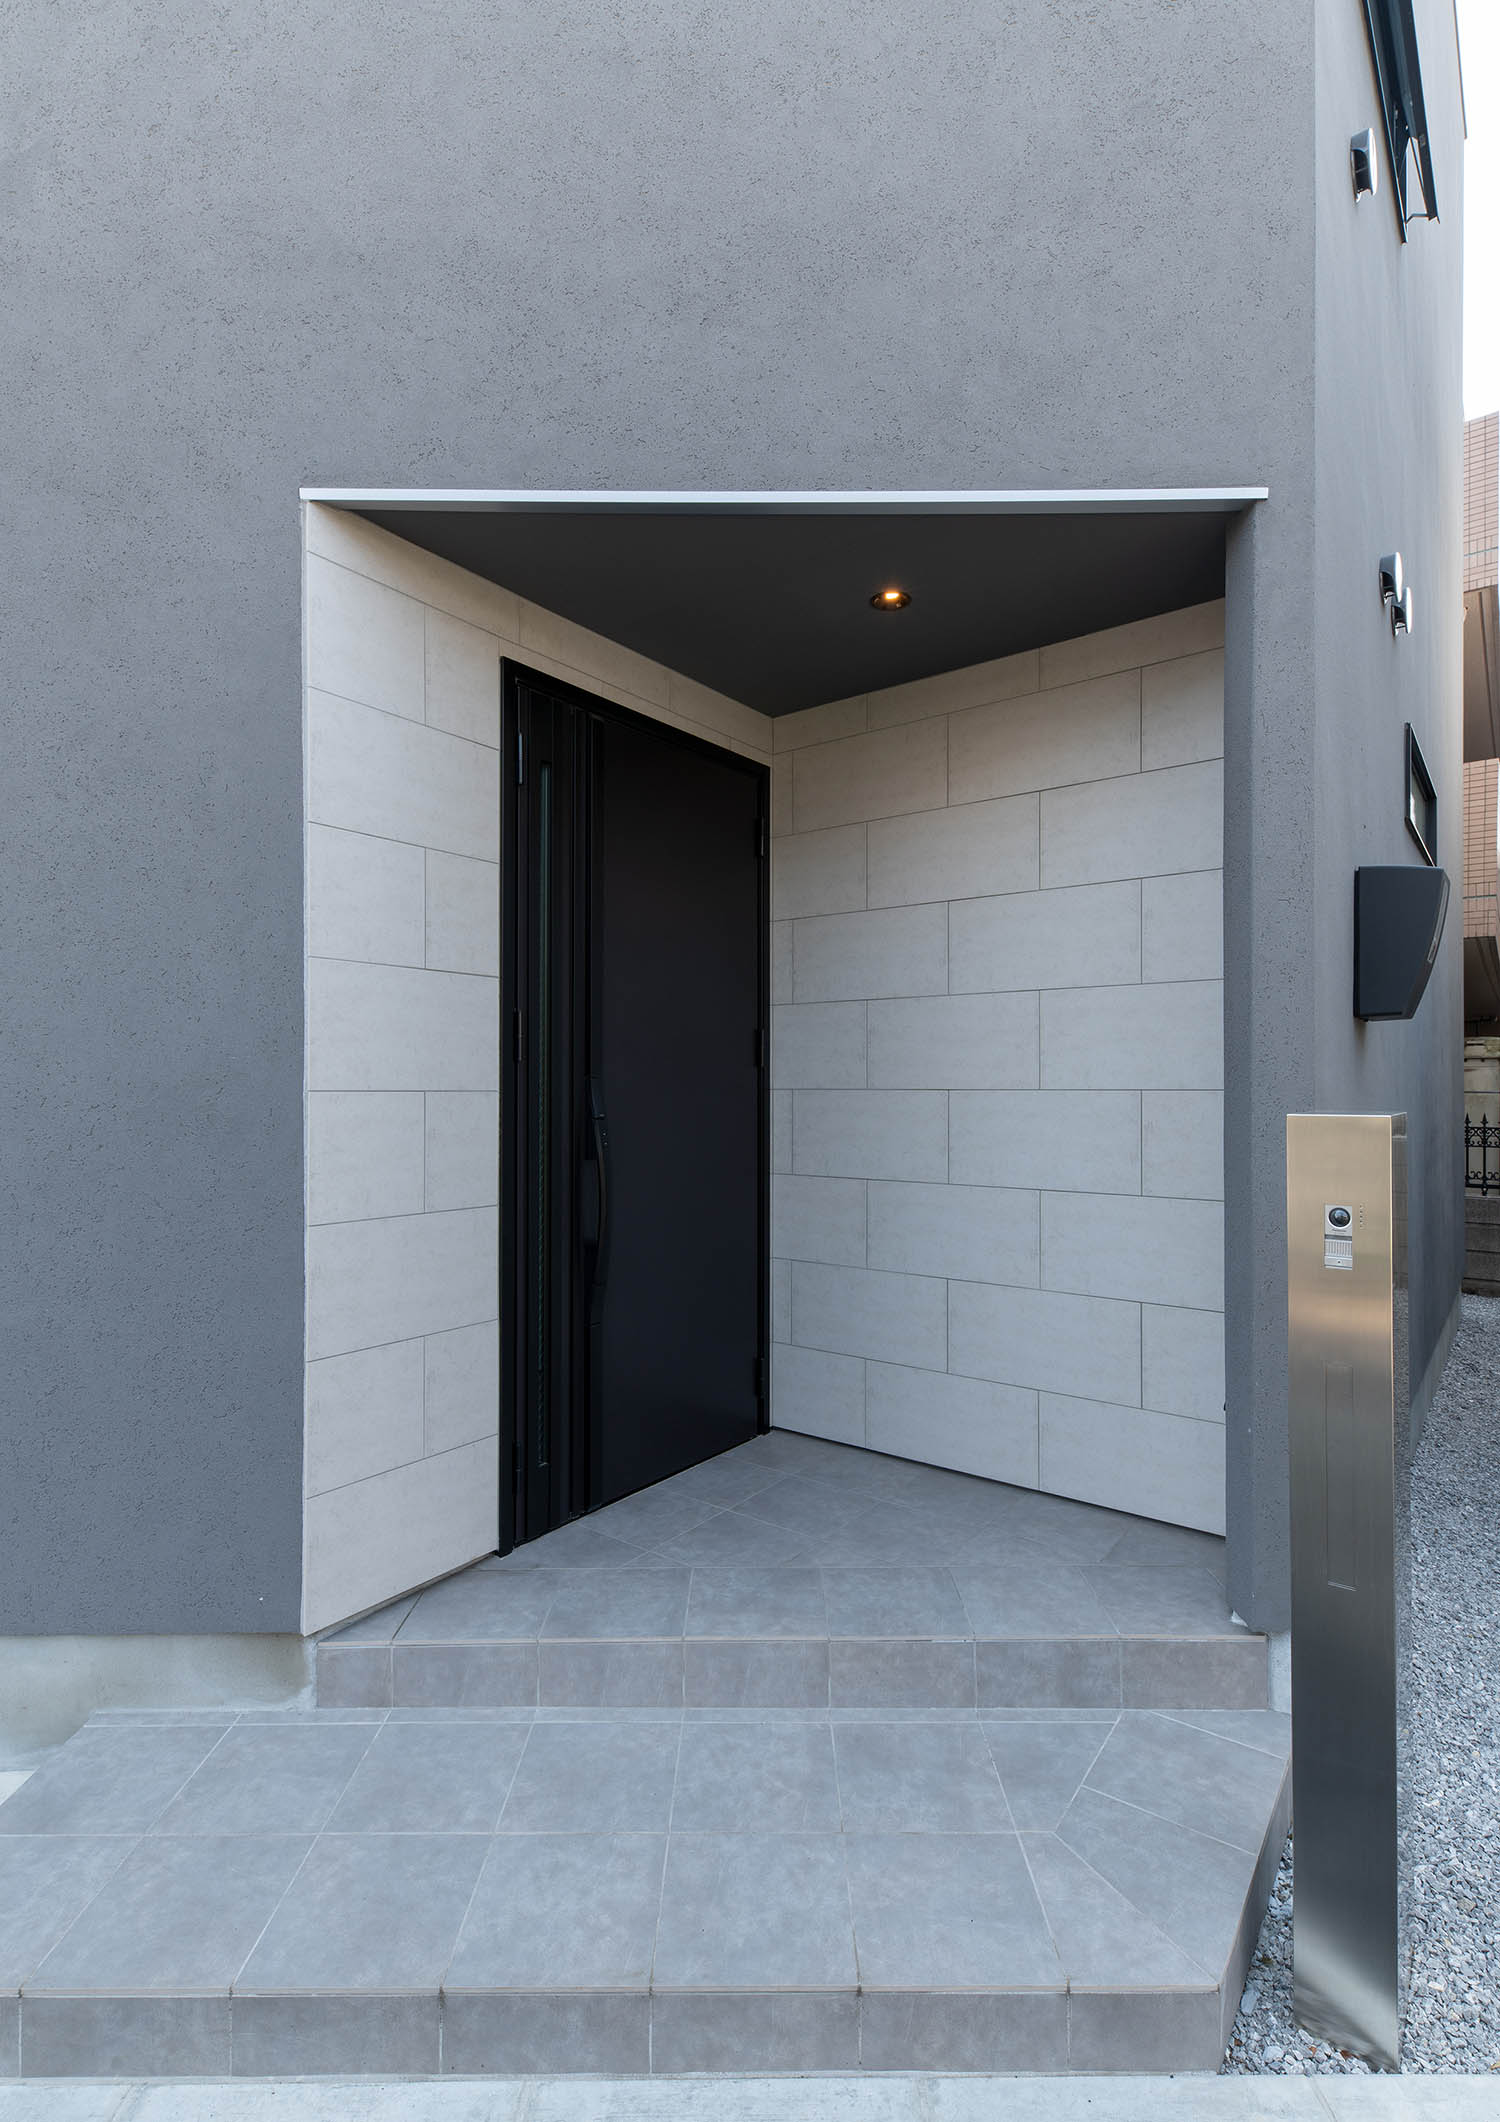 タイル張りの壁に黒い玄関扉が付けられた玄関ポーチ・デザイン住宅